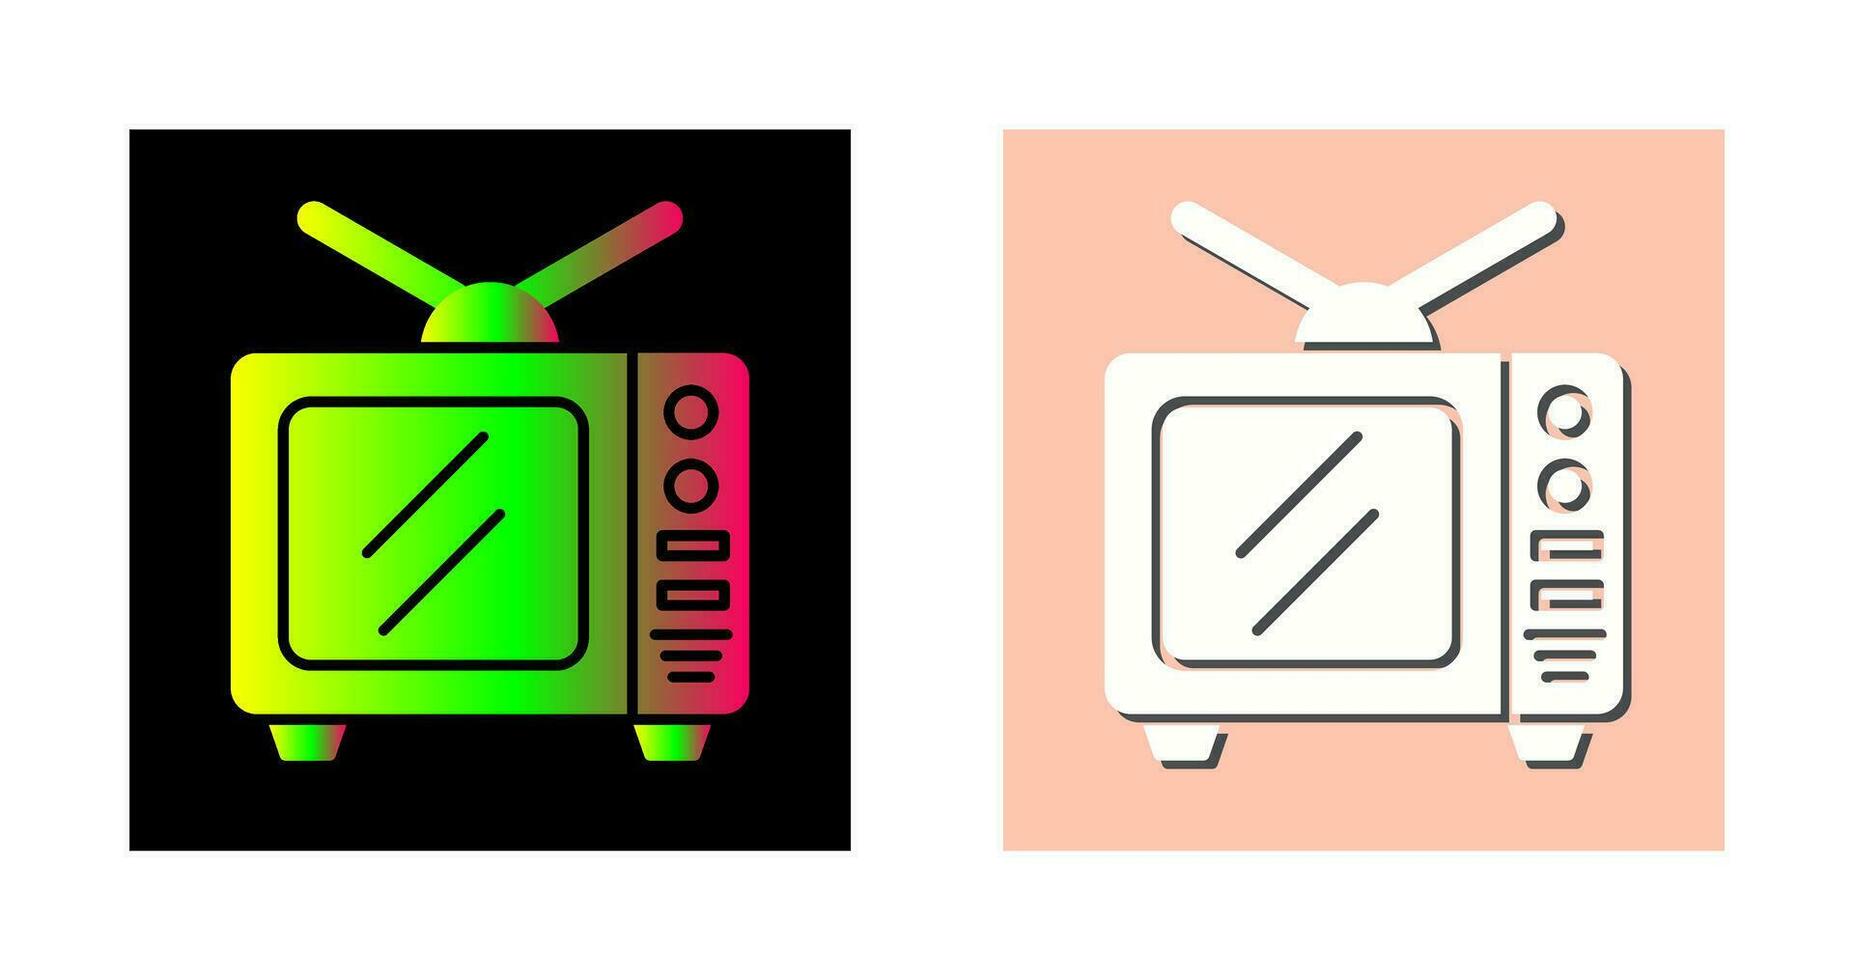 TV-Vektor-Symbol vektor